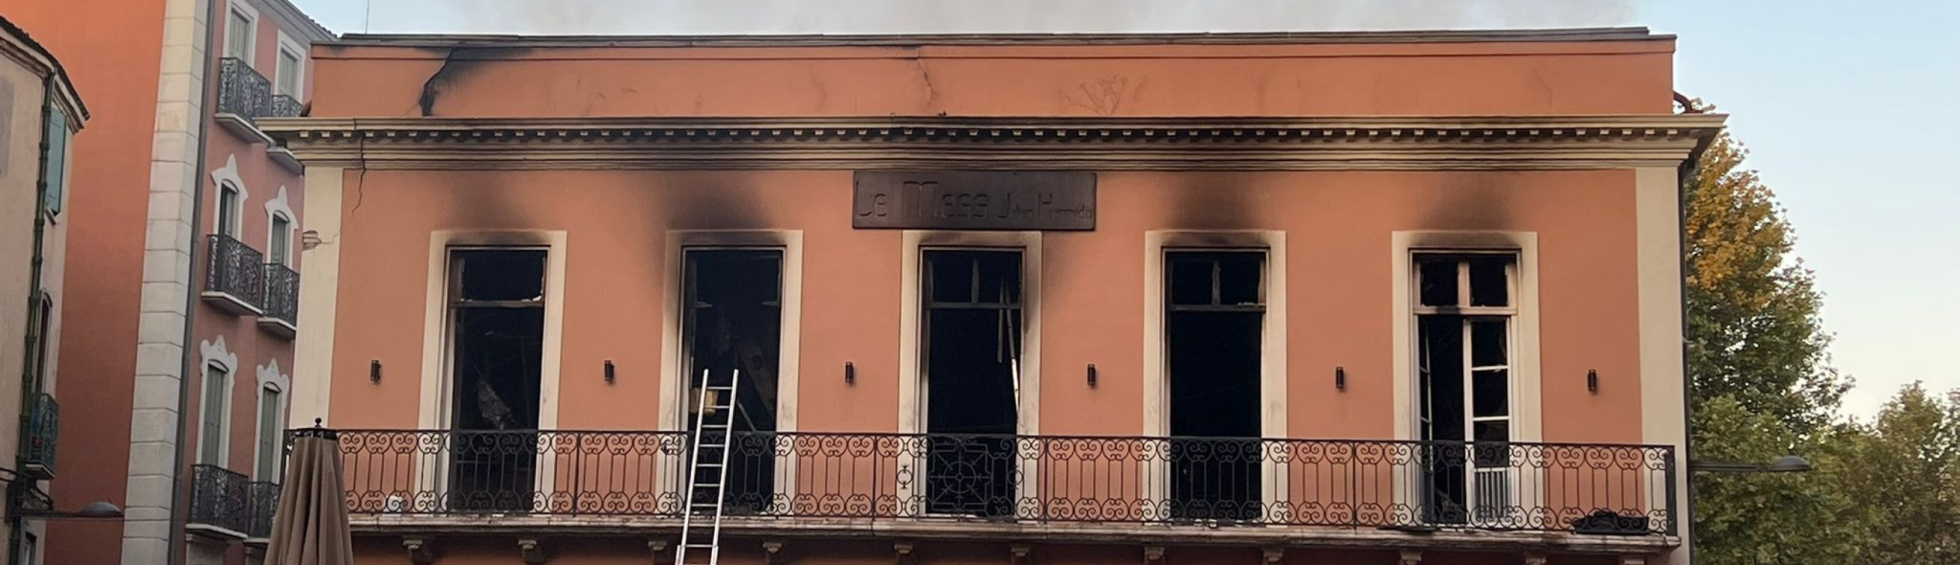 Incendie du Mess : la Mairie de Perpignan communique